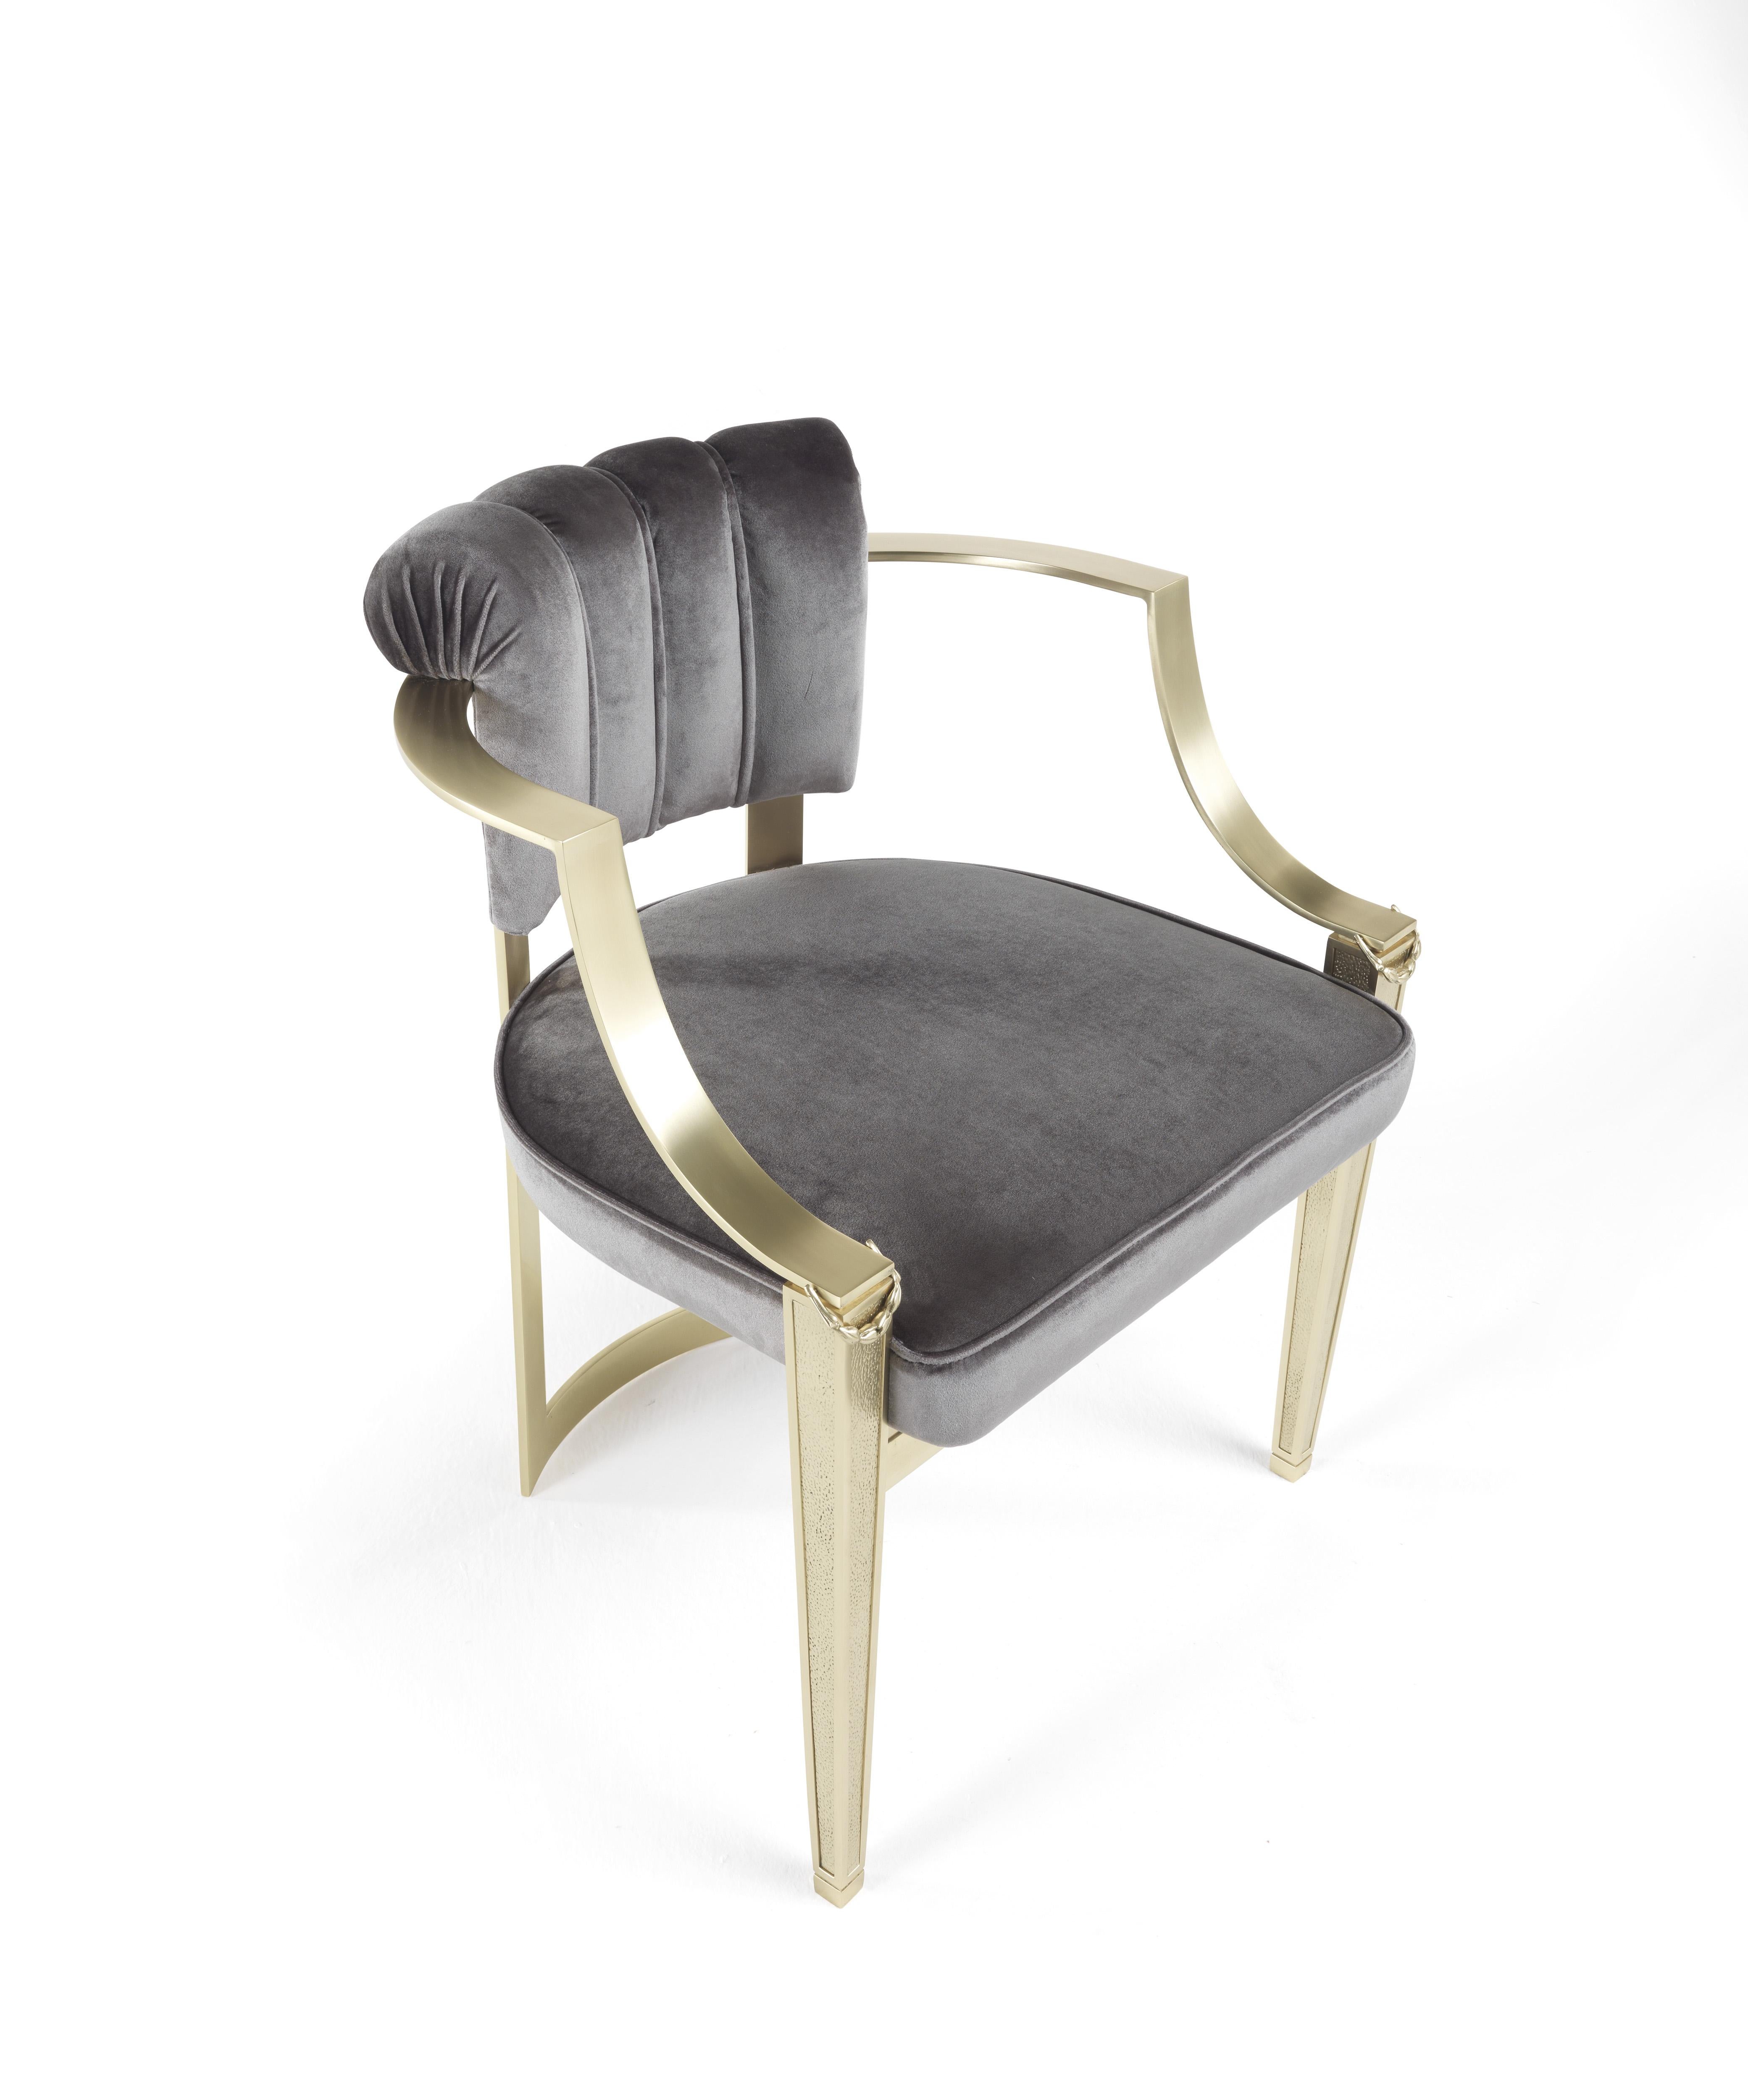 Auf halbem Weg zwischen Stuhl und Sessel ist Fuji ein raffiniertes Möbelstück, das einen frischen und lichtdurchfluteten klassischen Stil zum Ausdruck bringt. Die muschelförmige Rückenlehne ist mit dem Seidensatin der Collection'S überzogen und die